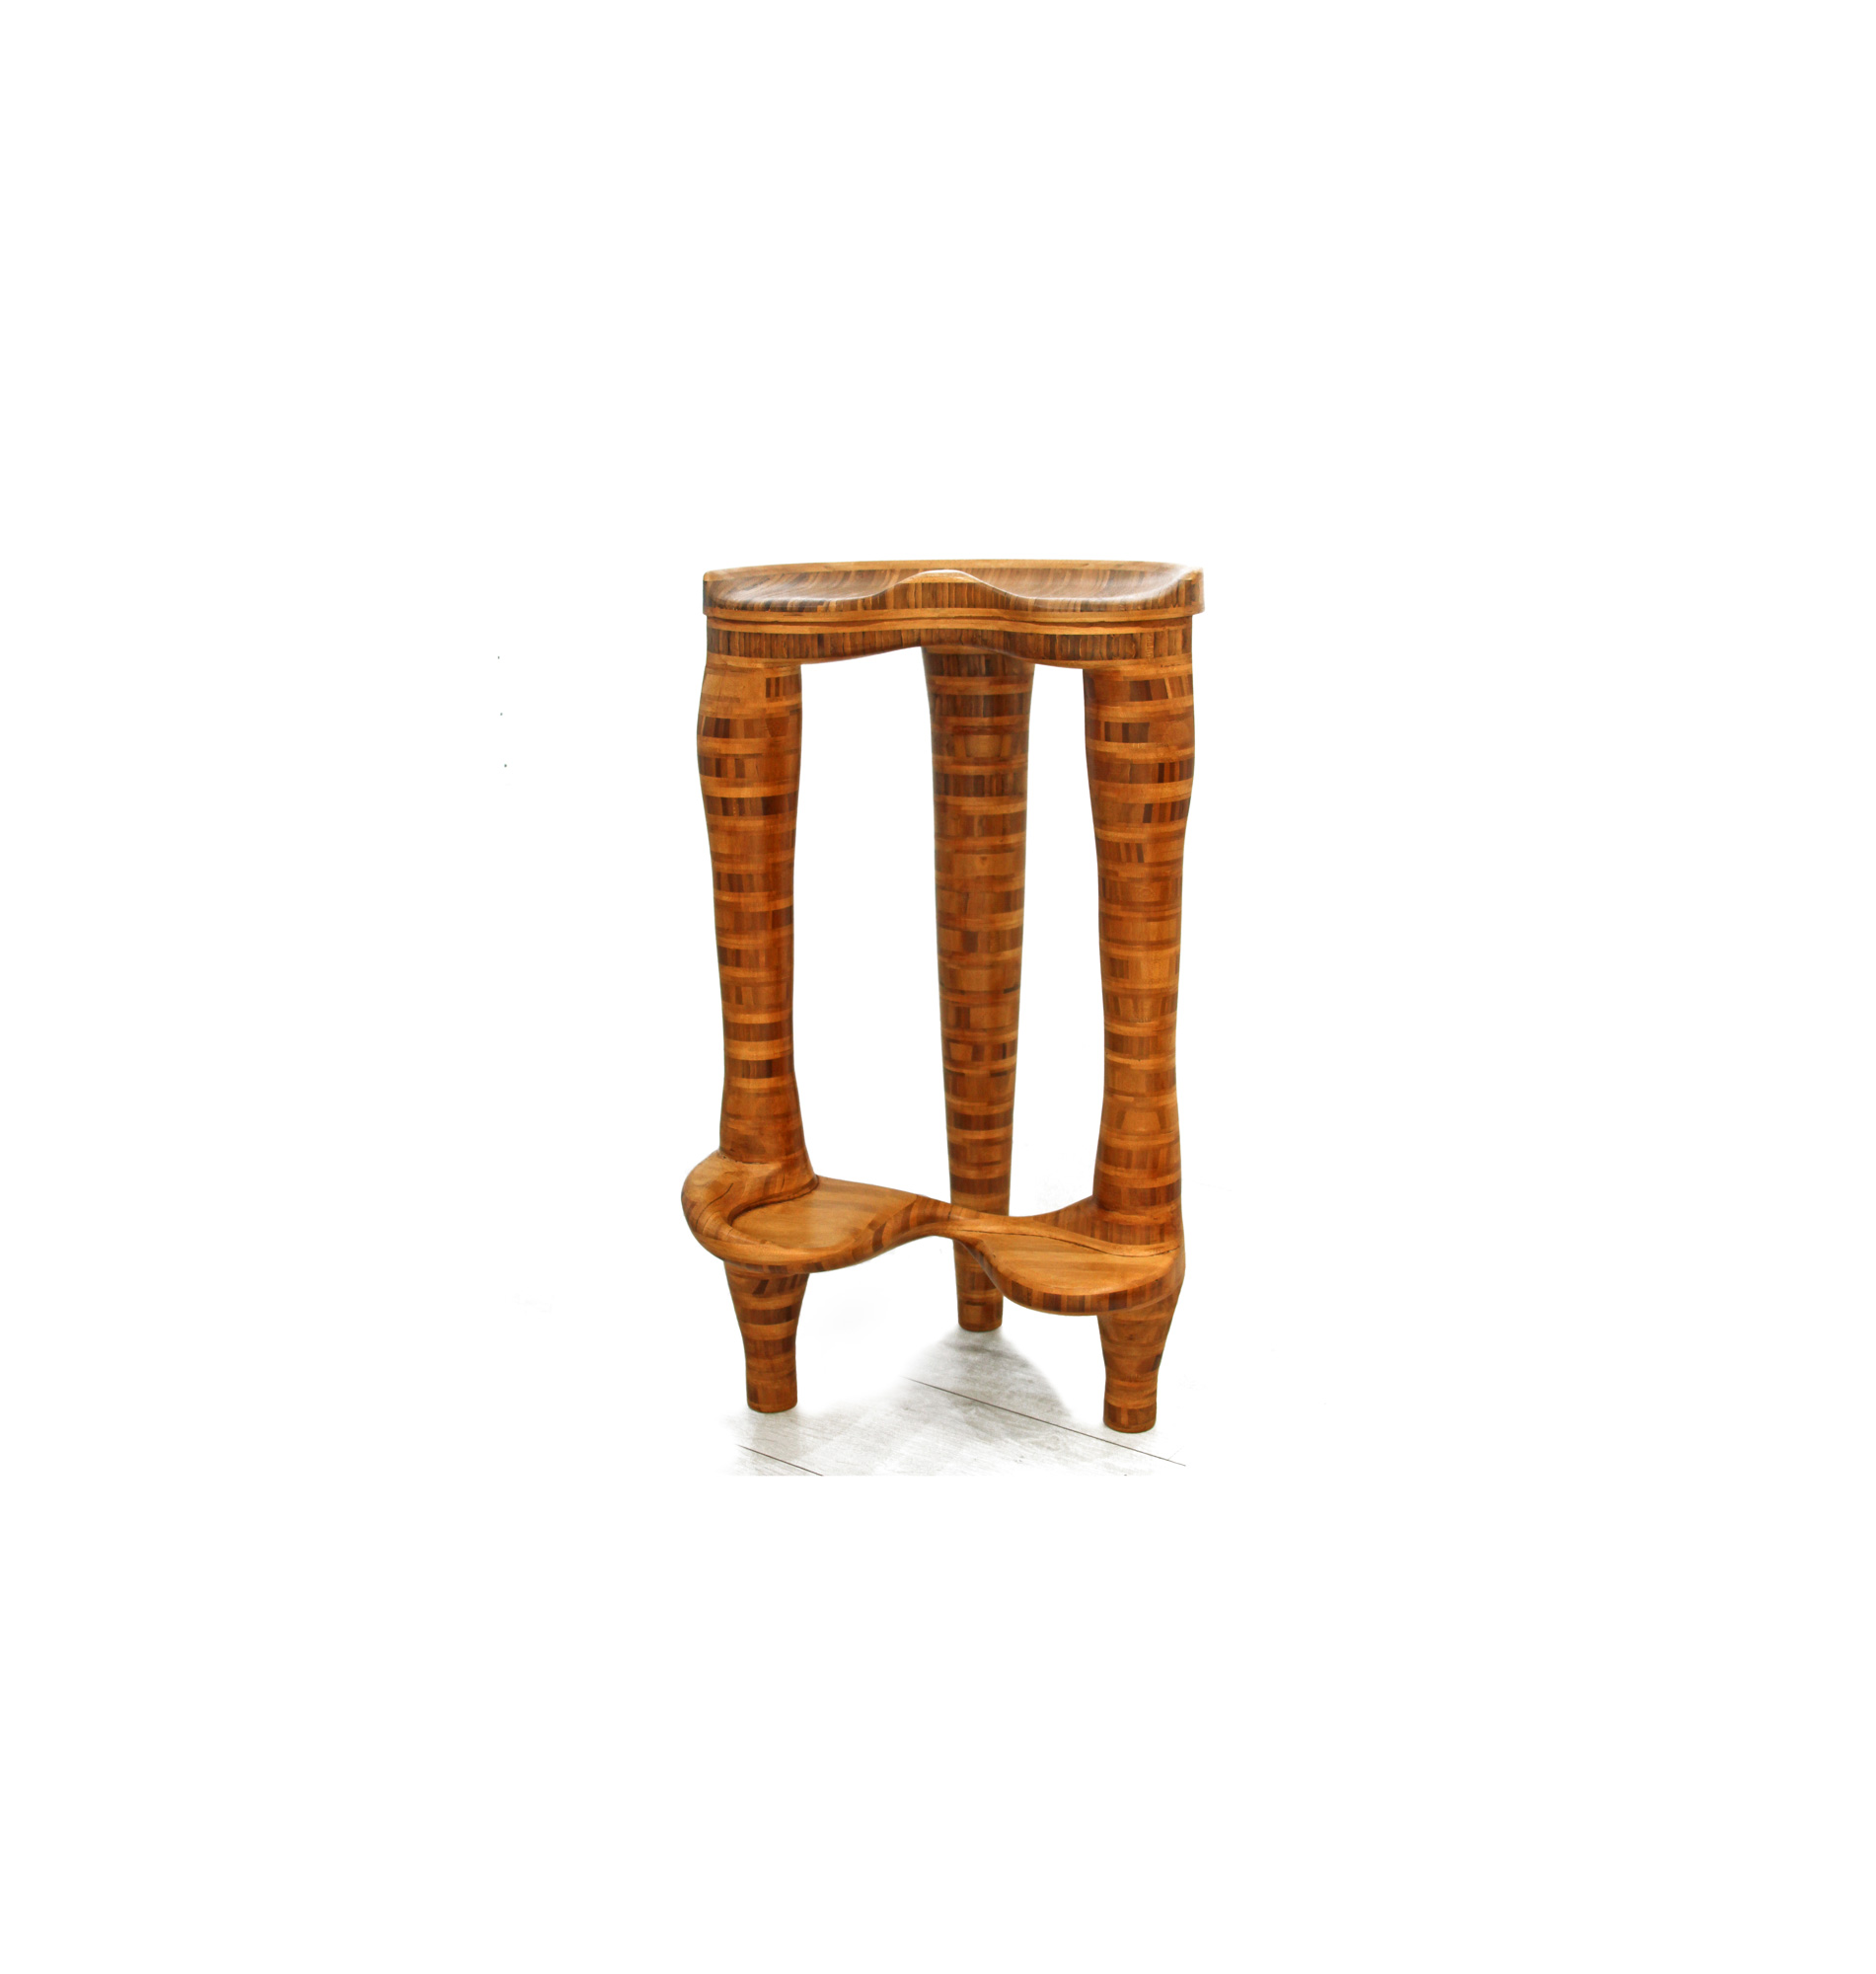 Design de meuble Tabouret Chaise haut à 3 pieds Corbra - bambou Le serpent de bois Patrick bloch